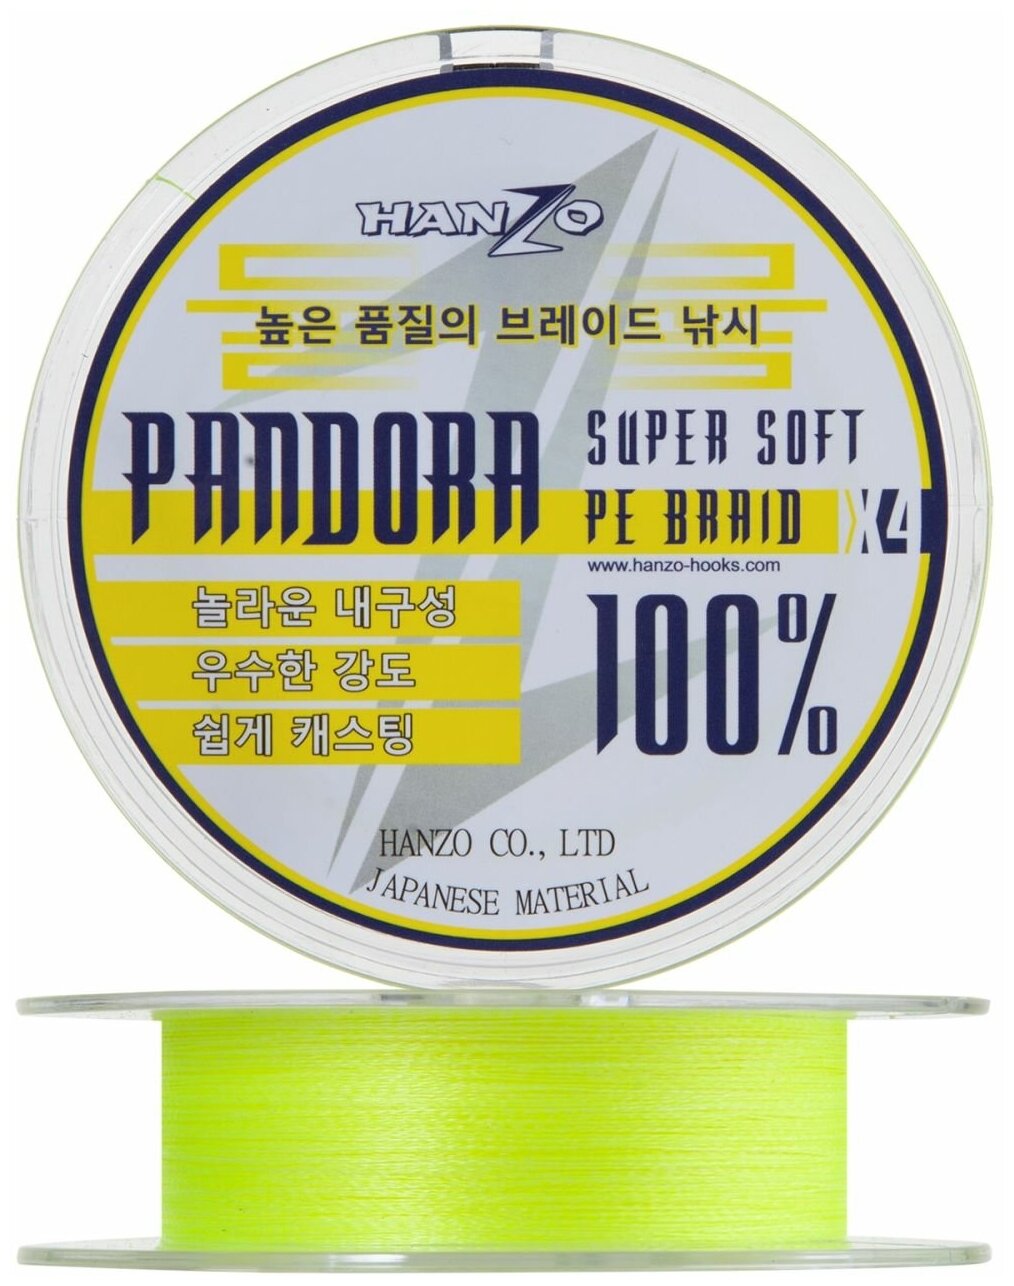 Hanzo Pandora X4